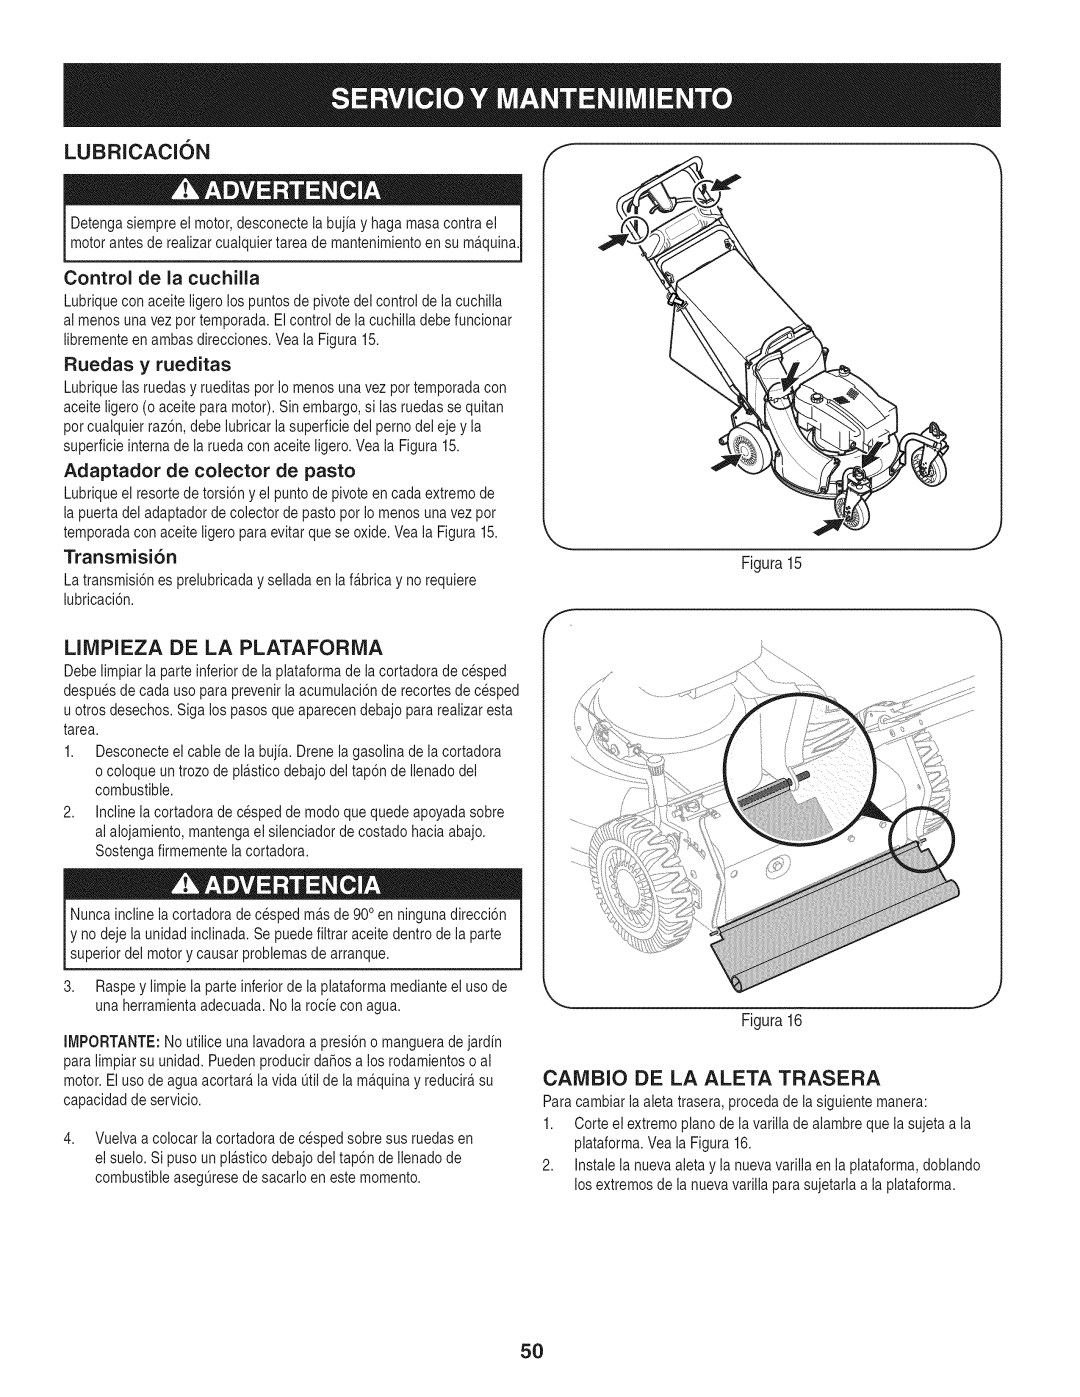 Craftsman 247.887210 manual Lubricacion, Transmisi6n, LIMPIEZA DE LA PLATAFORiVIA, Caivibio De La Aleta Trasera 